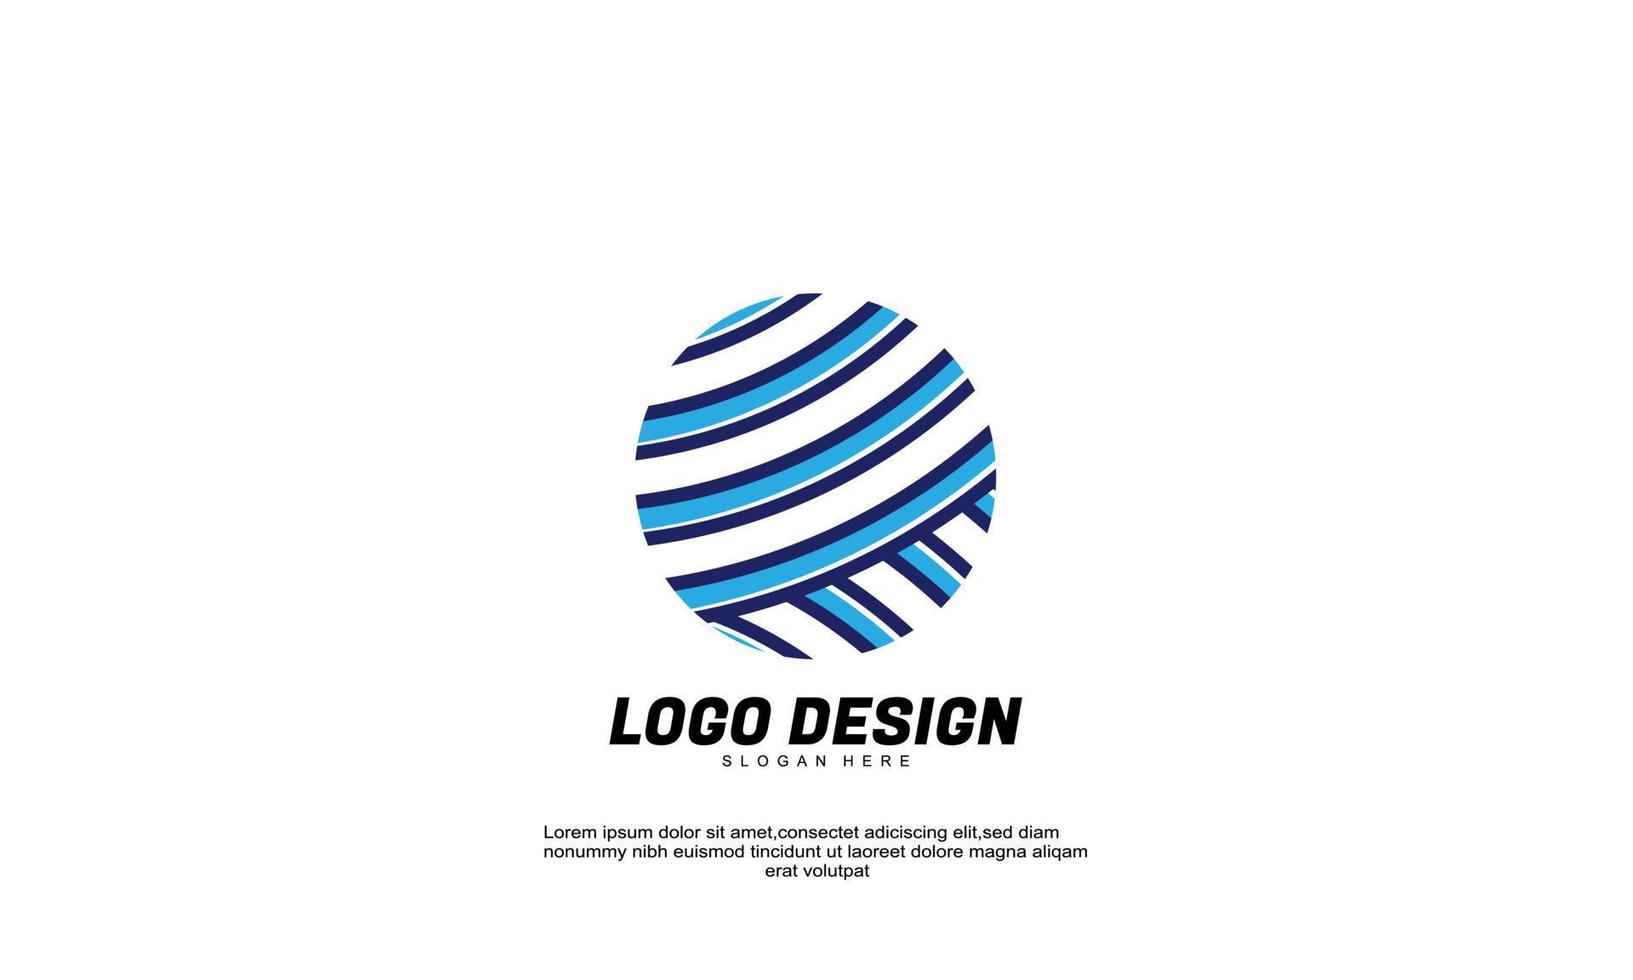 Logo d'inspiration créative abstraite de vecteur stock pour le modèle de conception de style plat de cercle d'entreprise et de ligne